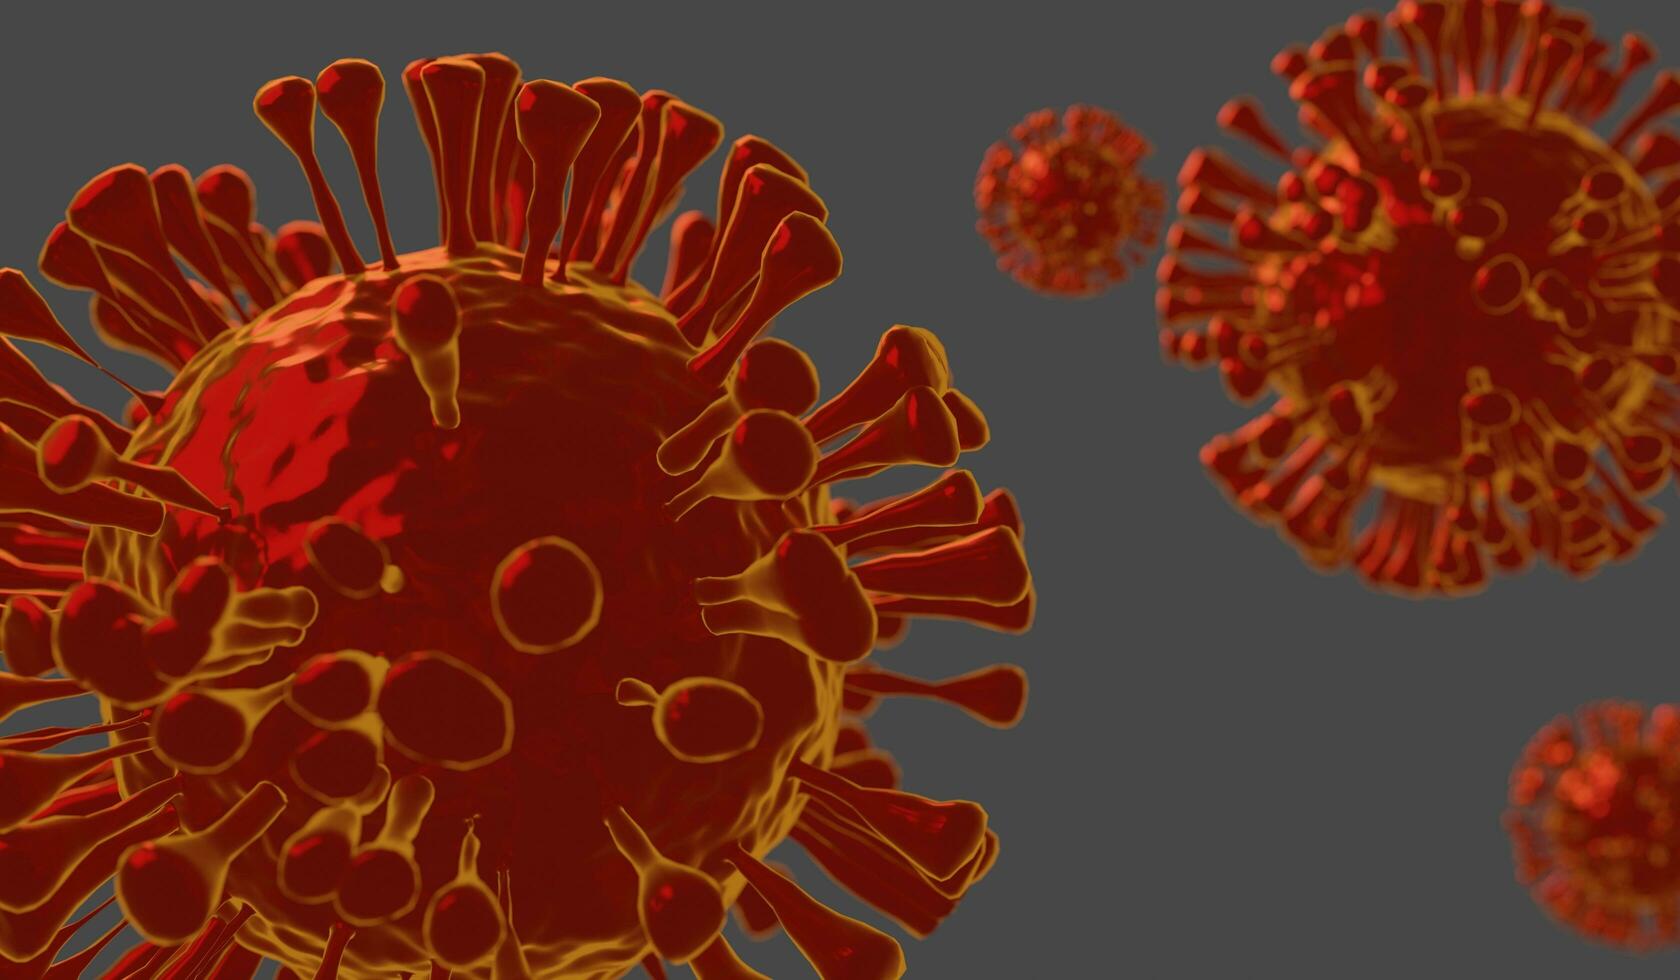 3d tolkning av coronavirus 2019-nCoV. coronavirus ansvarig för asiatisk influensa utbrott begrepp bakgrund.influensa som farlig mest i de värld som en pandemisk. virus stänga upp focus.illustration. foto